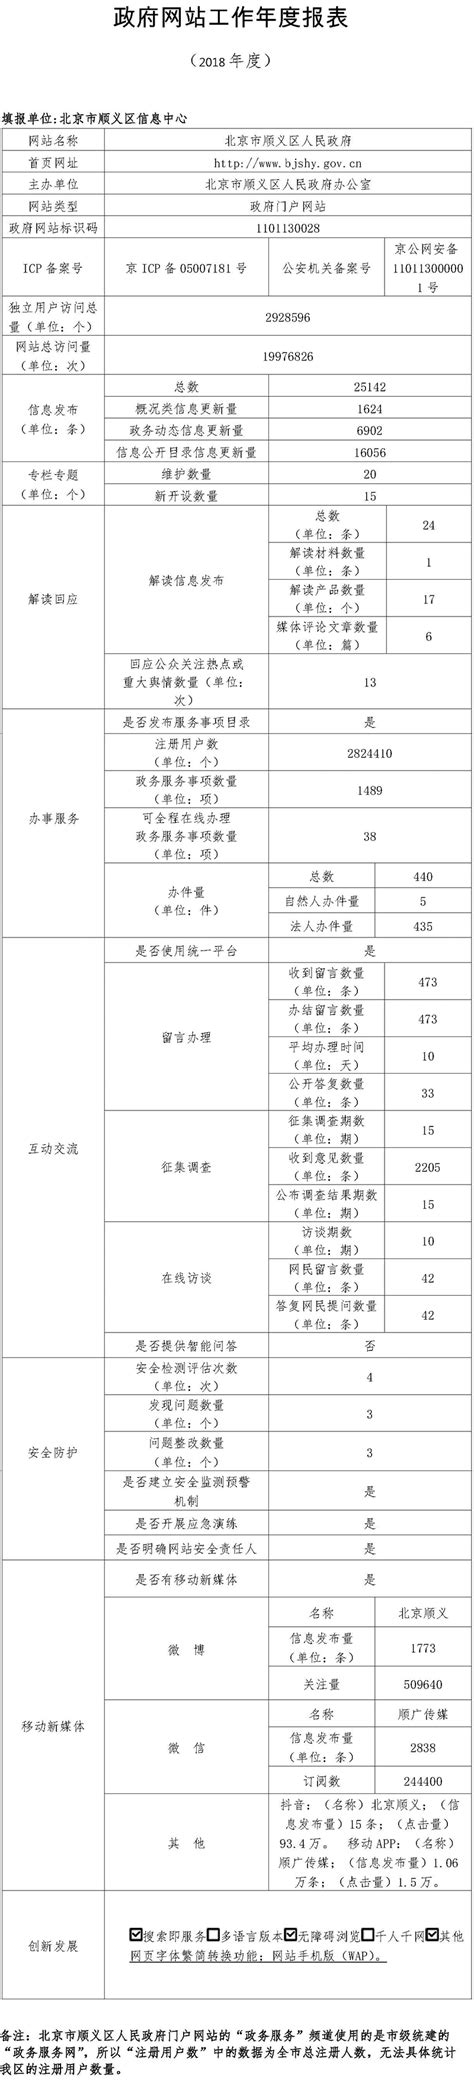 北京市顺义区统计年鉴2021_报告-报告厅